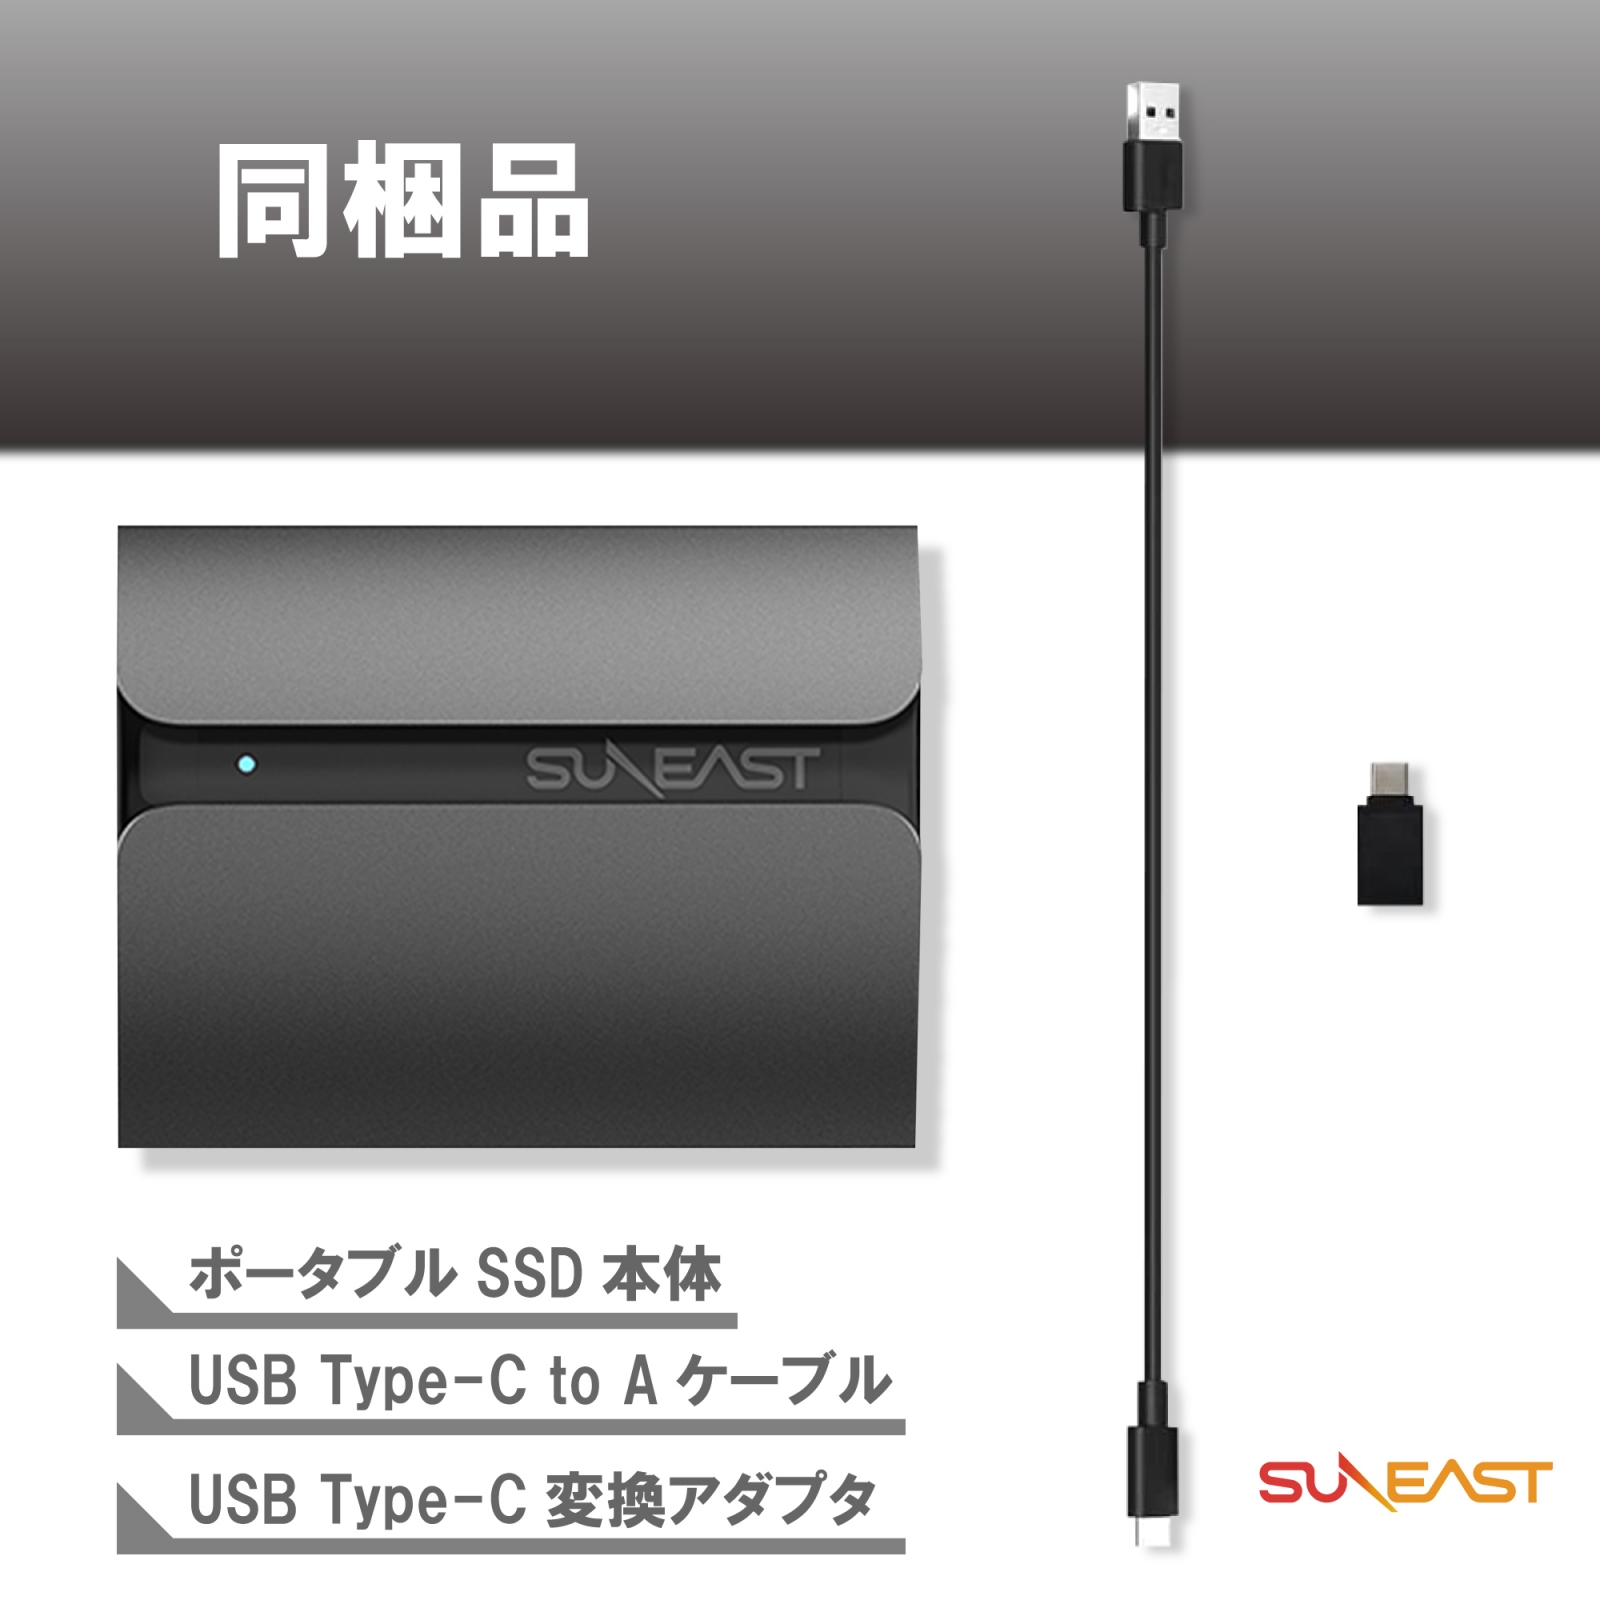 SUNEAST ポータブル SSD 2TB 3年保証 USB3.1 Type-C R:560MB/秒 USB